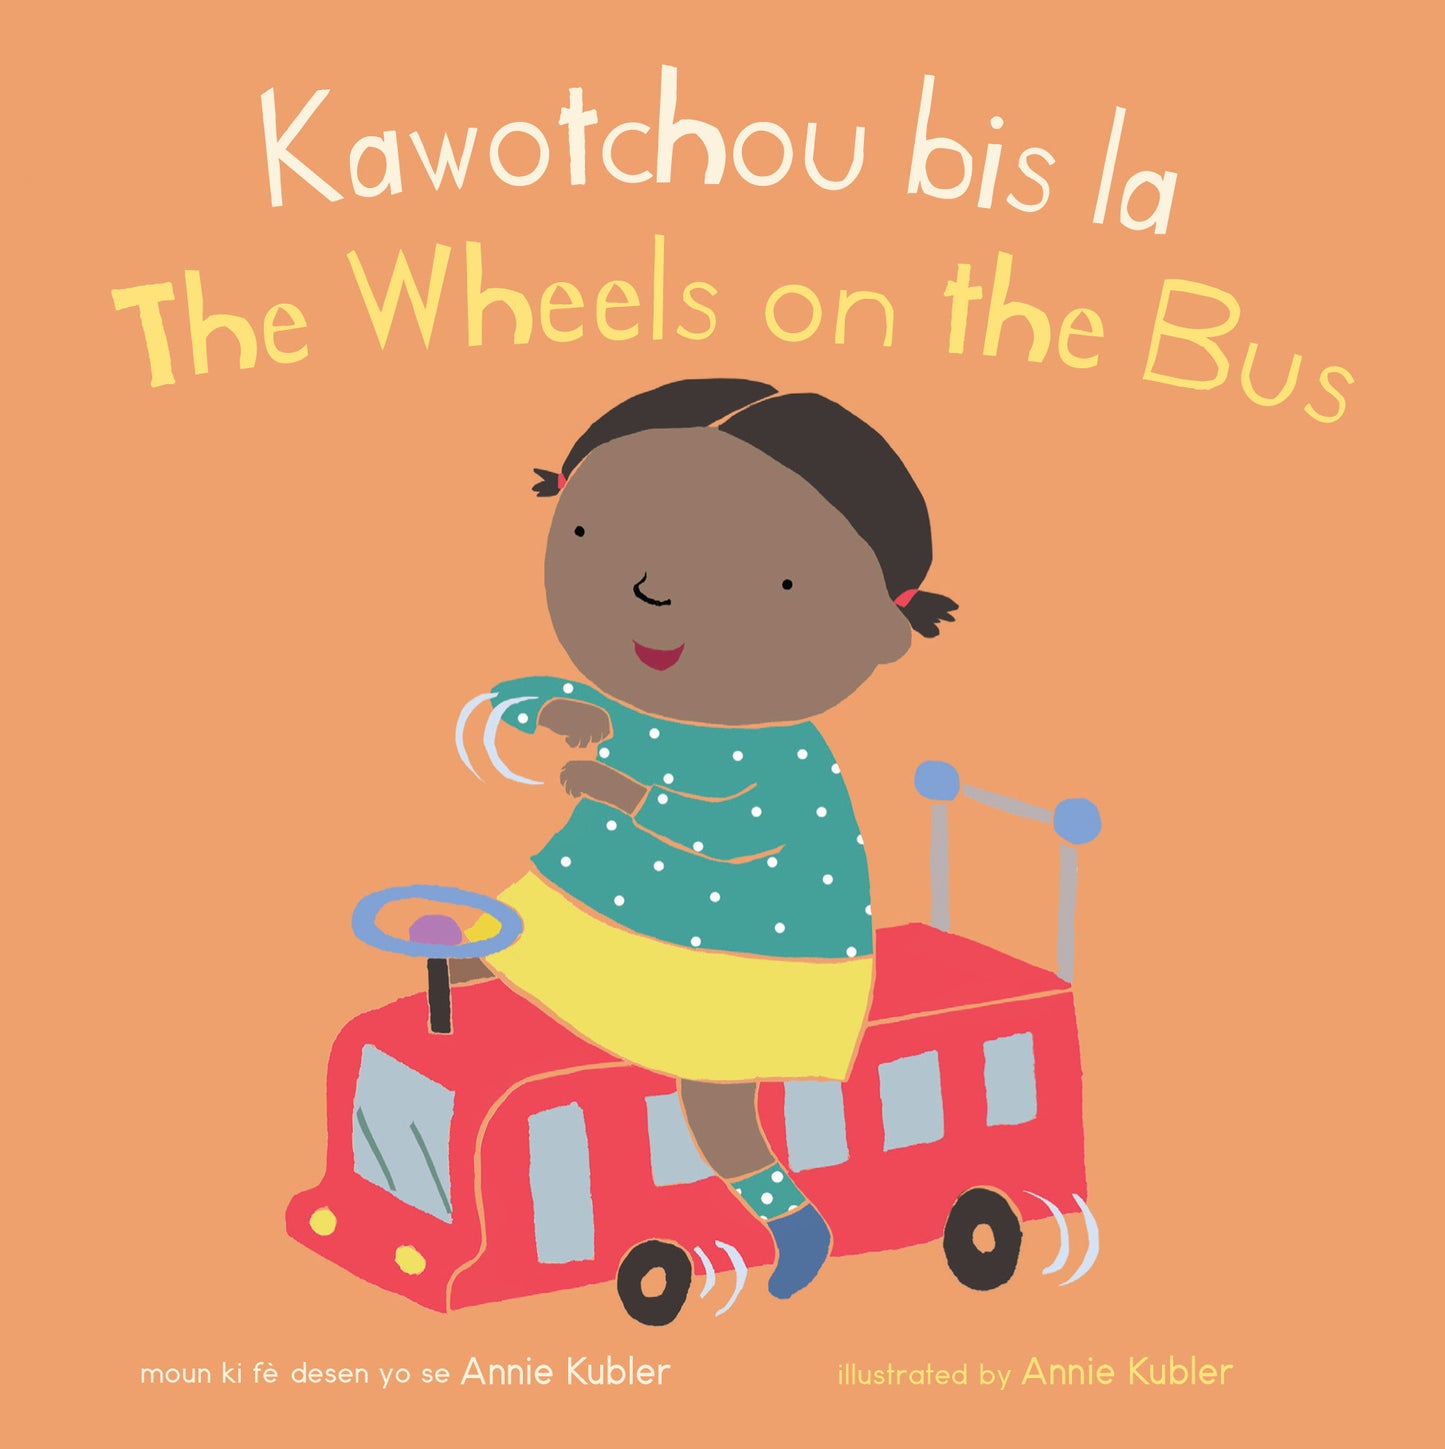 Kawotchou bis la/The Wheels on the Bus